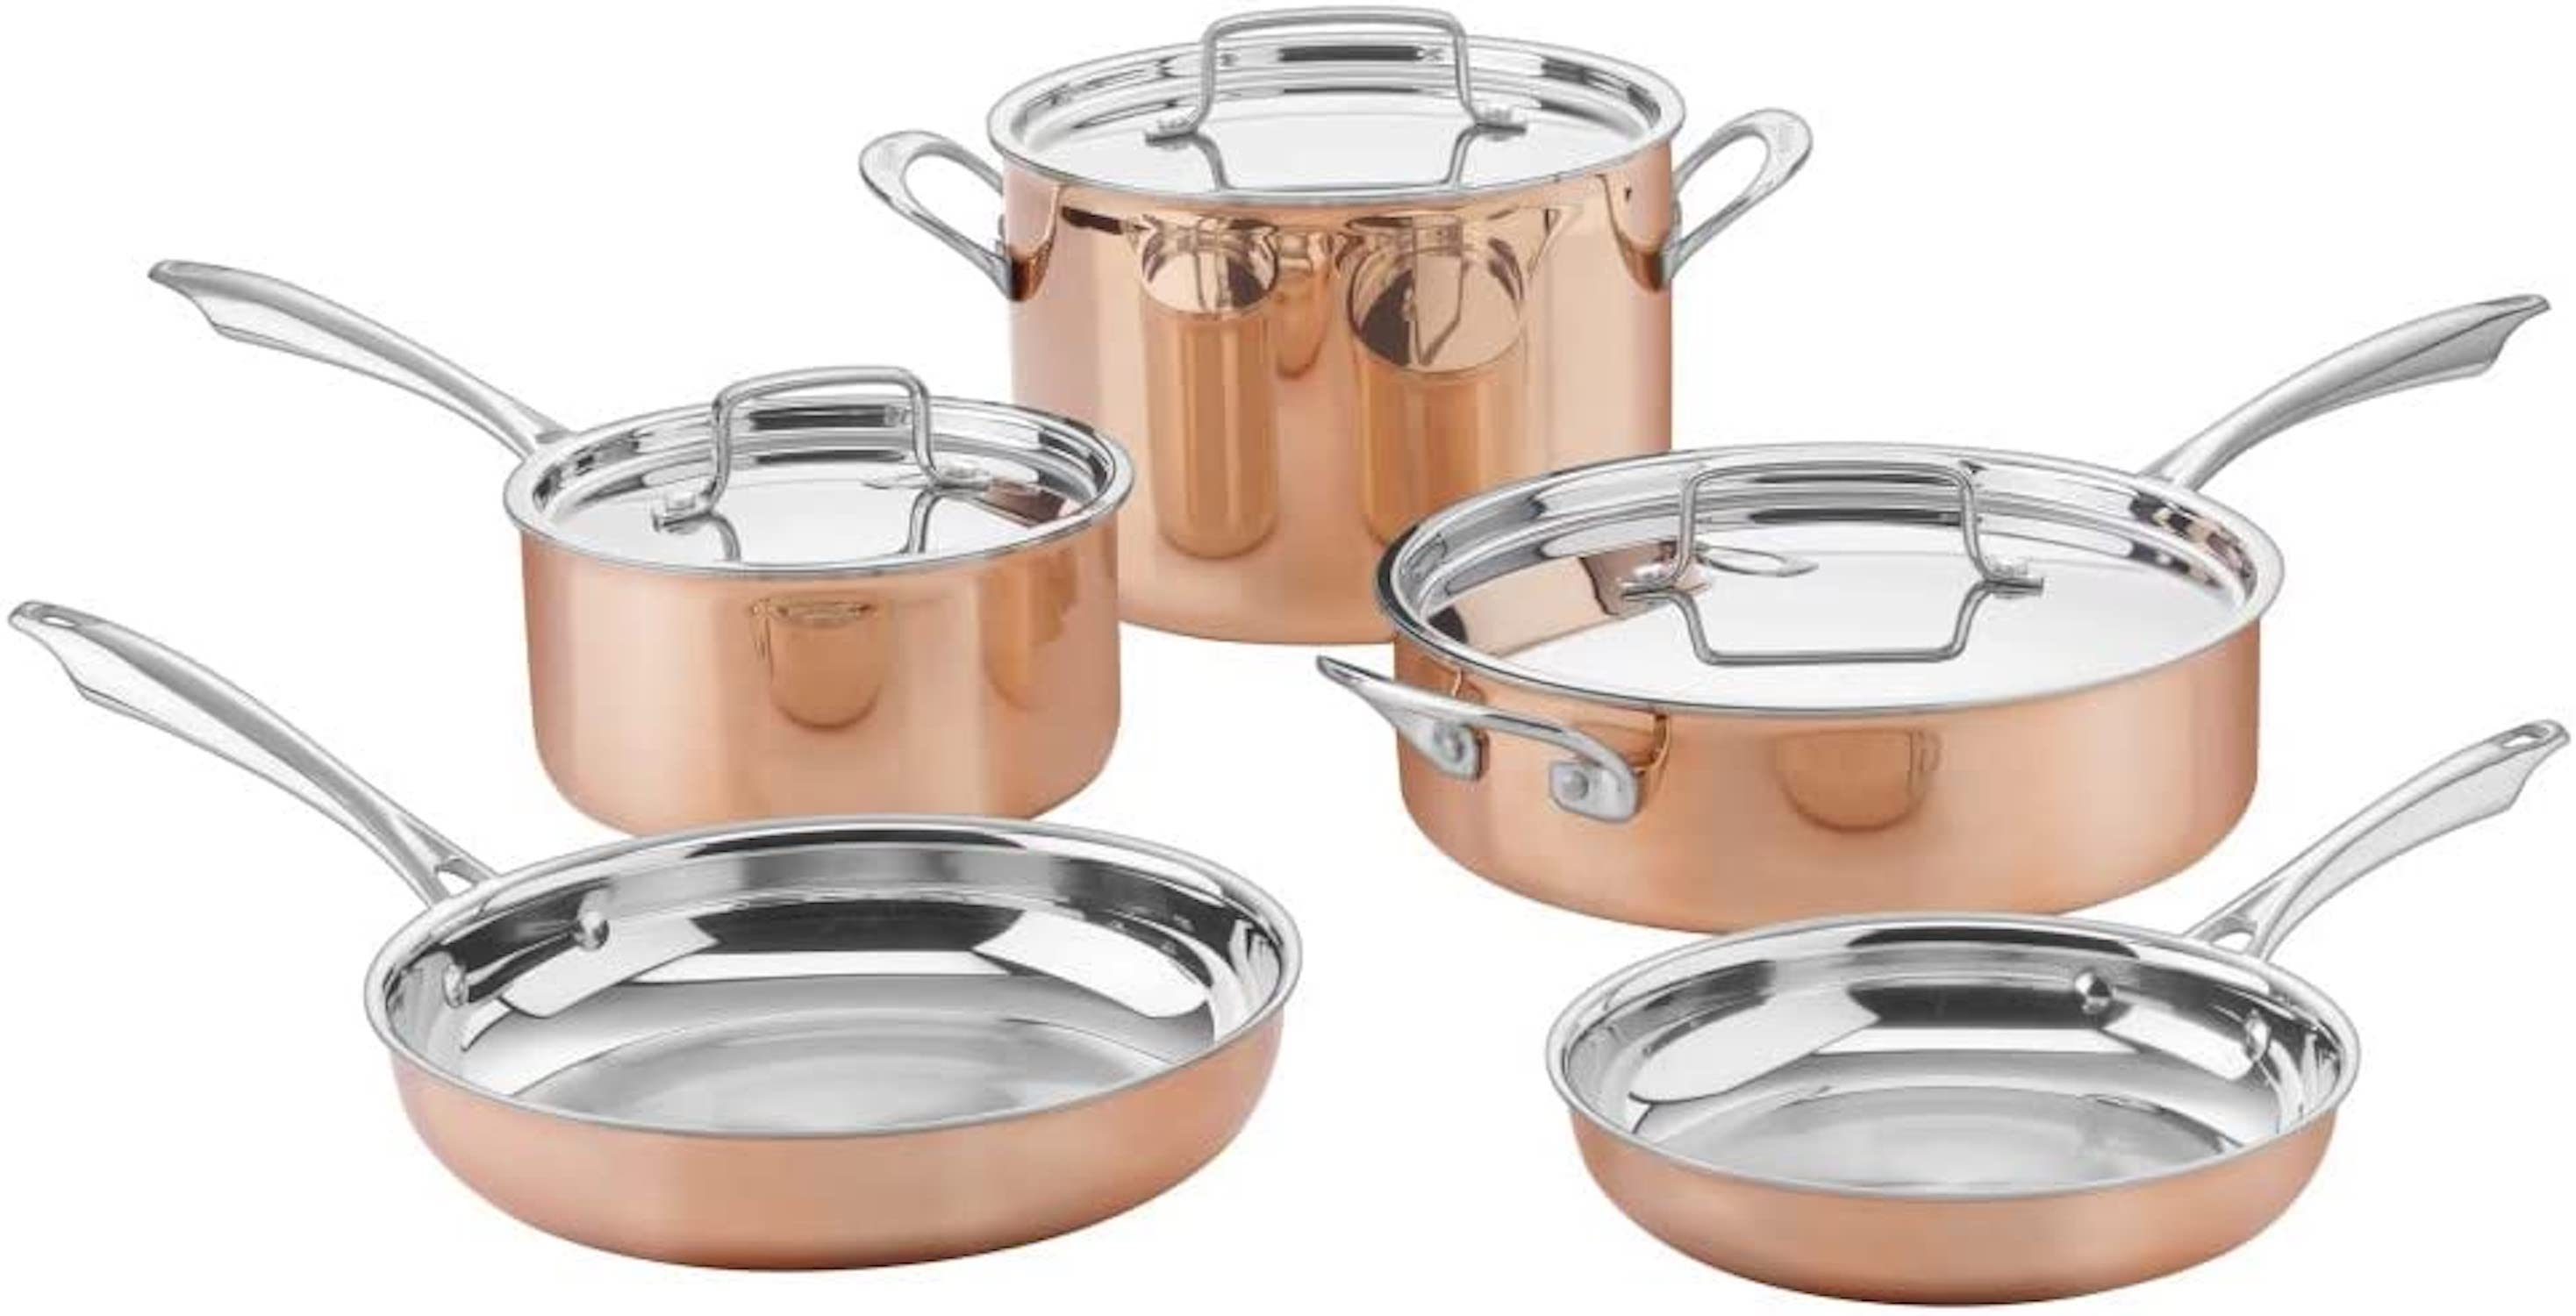 https://cdn.bestreviews.com/images/v4desktop/product-matrix/best-copper-cookware-sets-cuisinart--ctpp-8-cuisinart-copper-collection-cookware-set-2.jpg